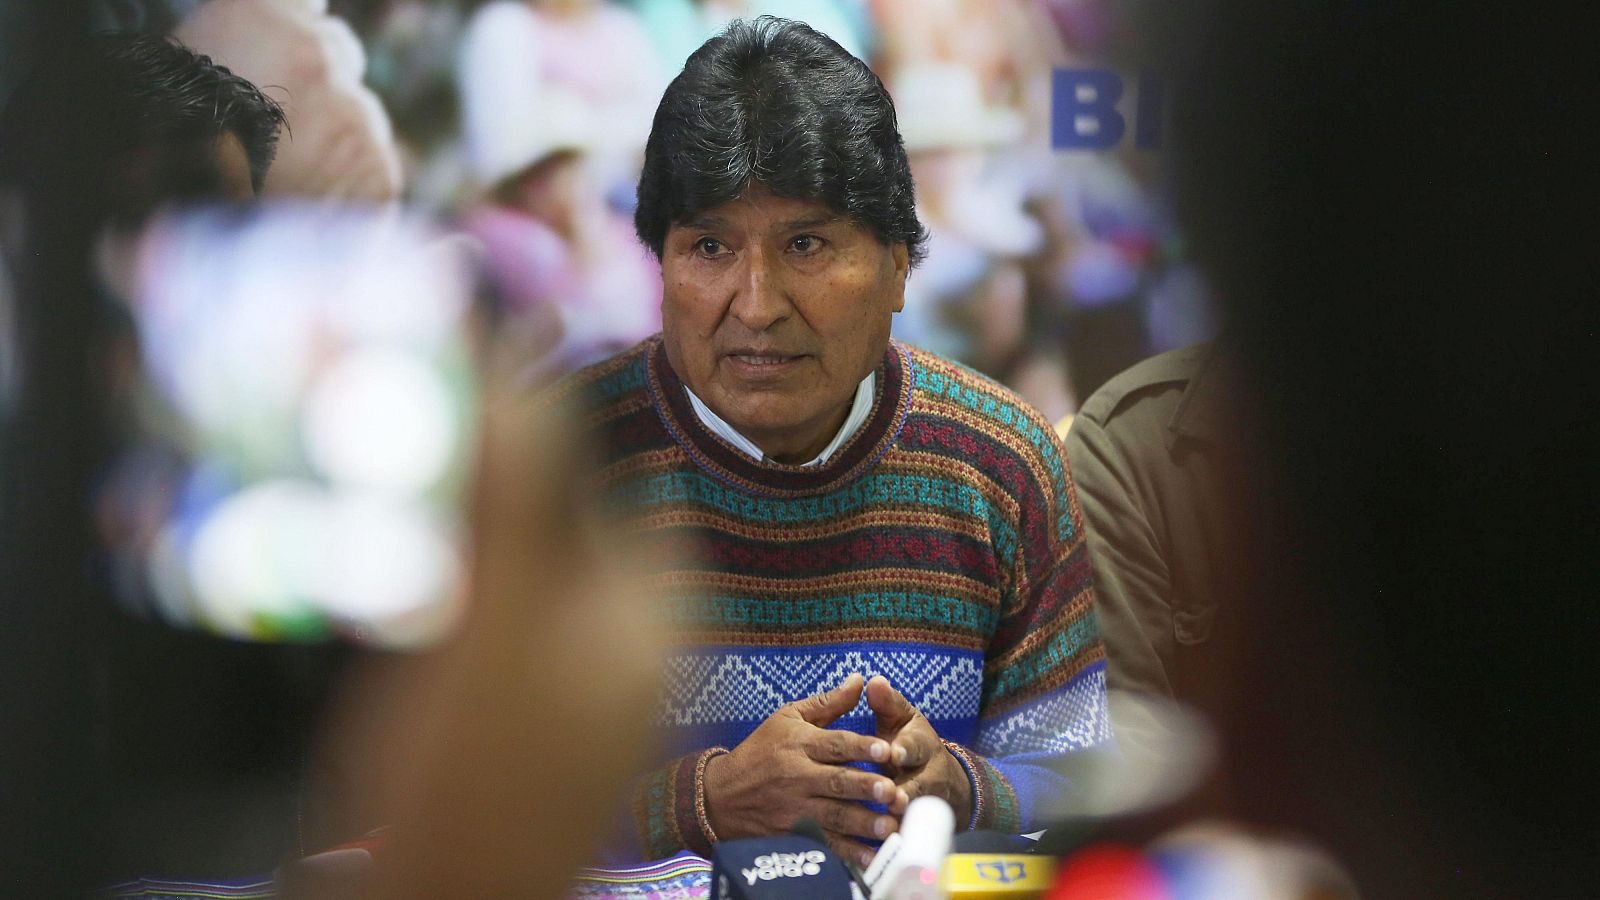 El expresidente de Bolivia Evo Morales durante una conferencia de prensa en La Paz